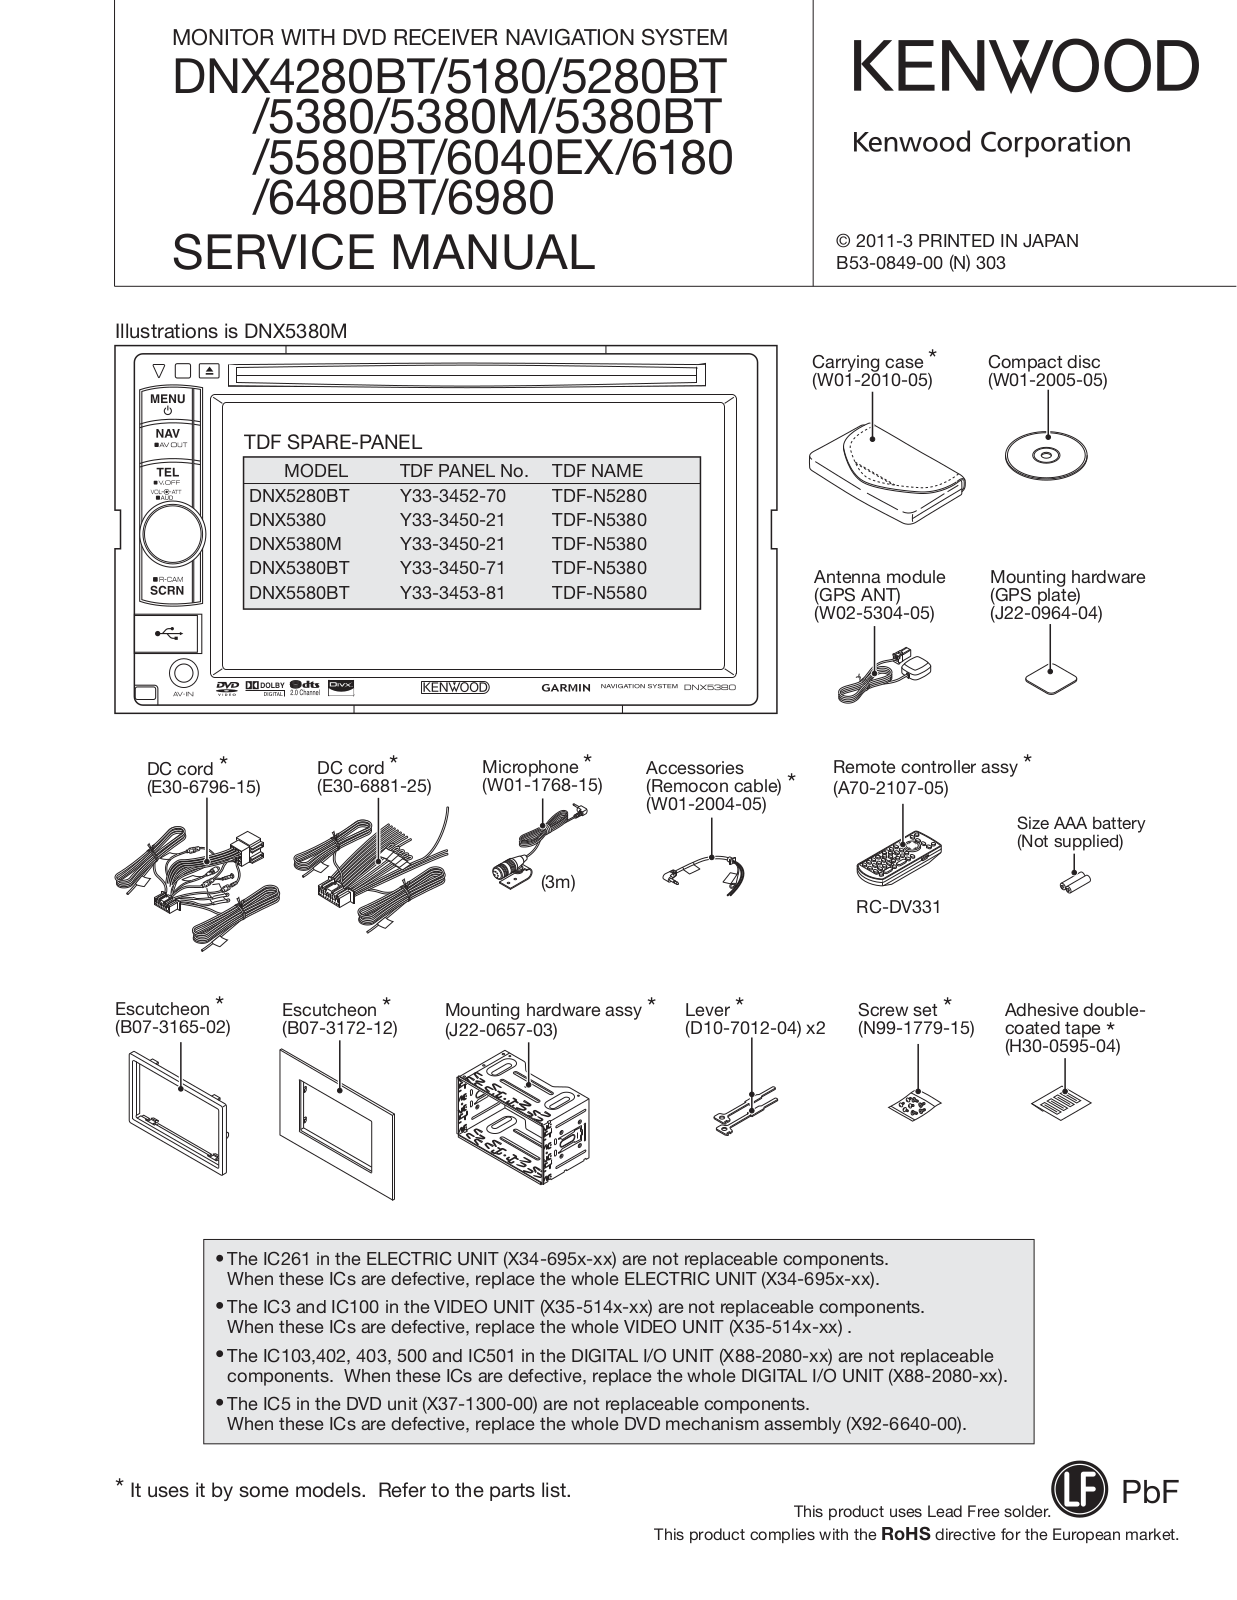 Kenwood DNX-6980, DNX-6480-BT, DNX-6040-EX, DNX-5580-BT, DNX-5380-M Service Manual